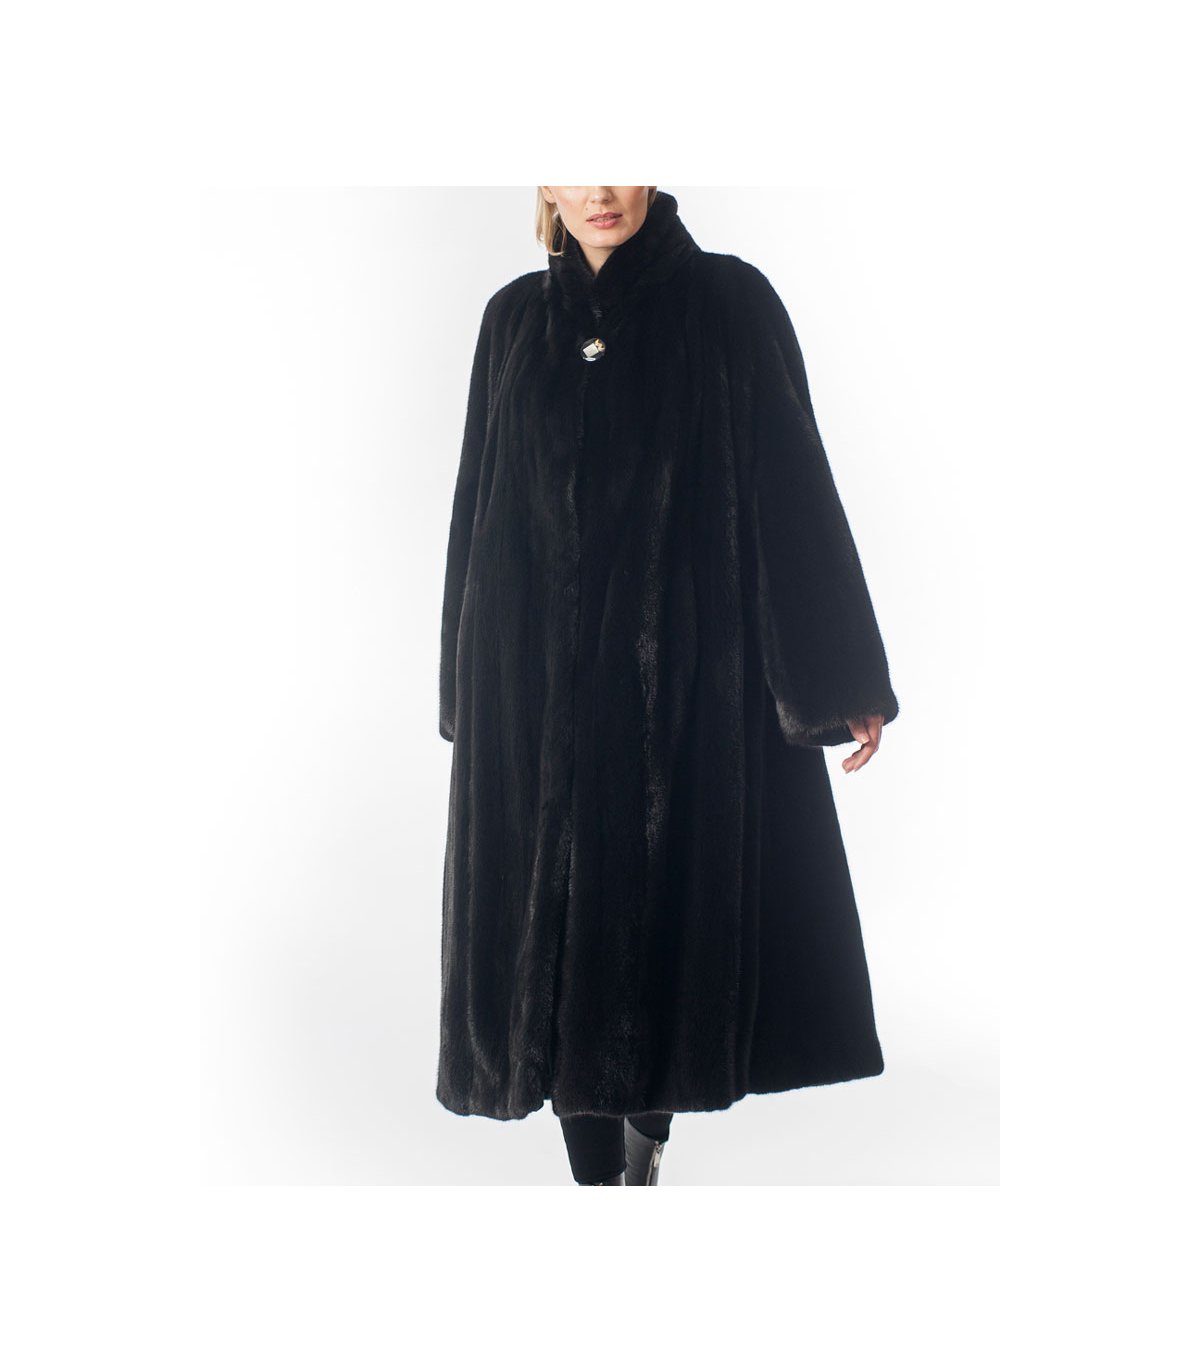 Shop for Black Mink Fur Evening Coat at Fursource